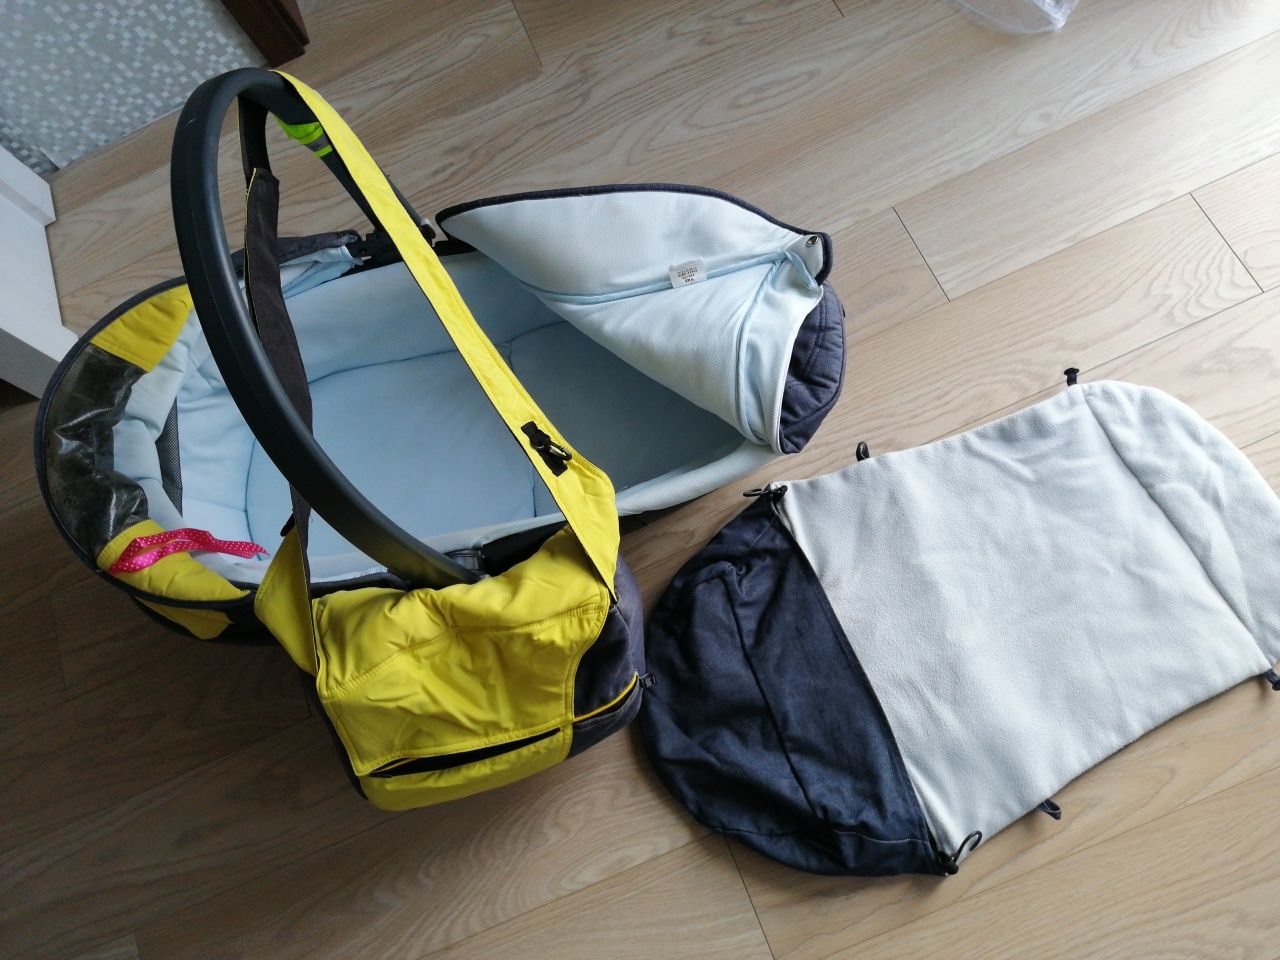 Gondola, torba z przewijakiem, śpiworek do spacerówki - stelaż gratis